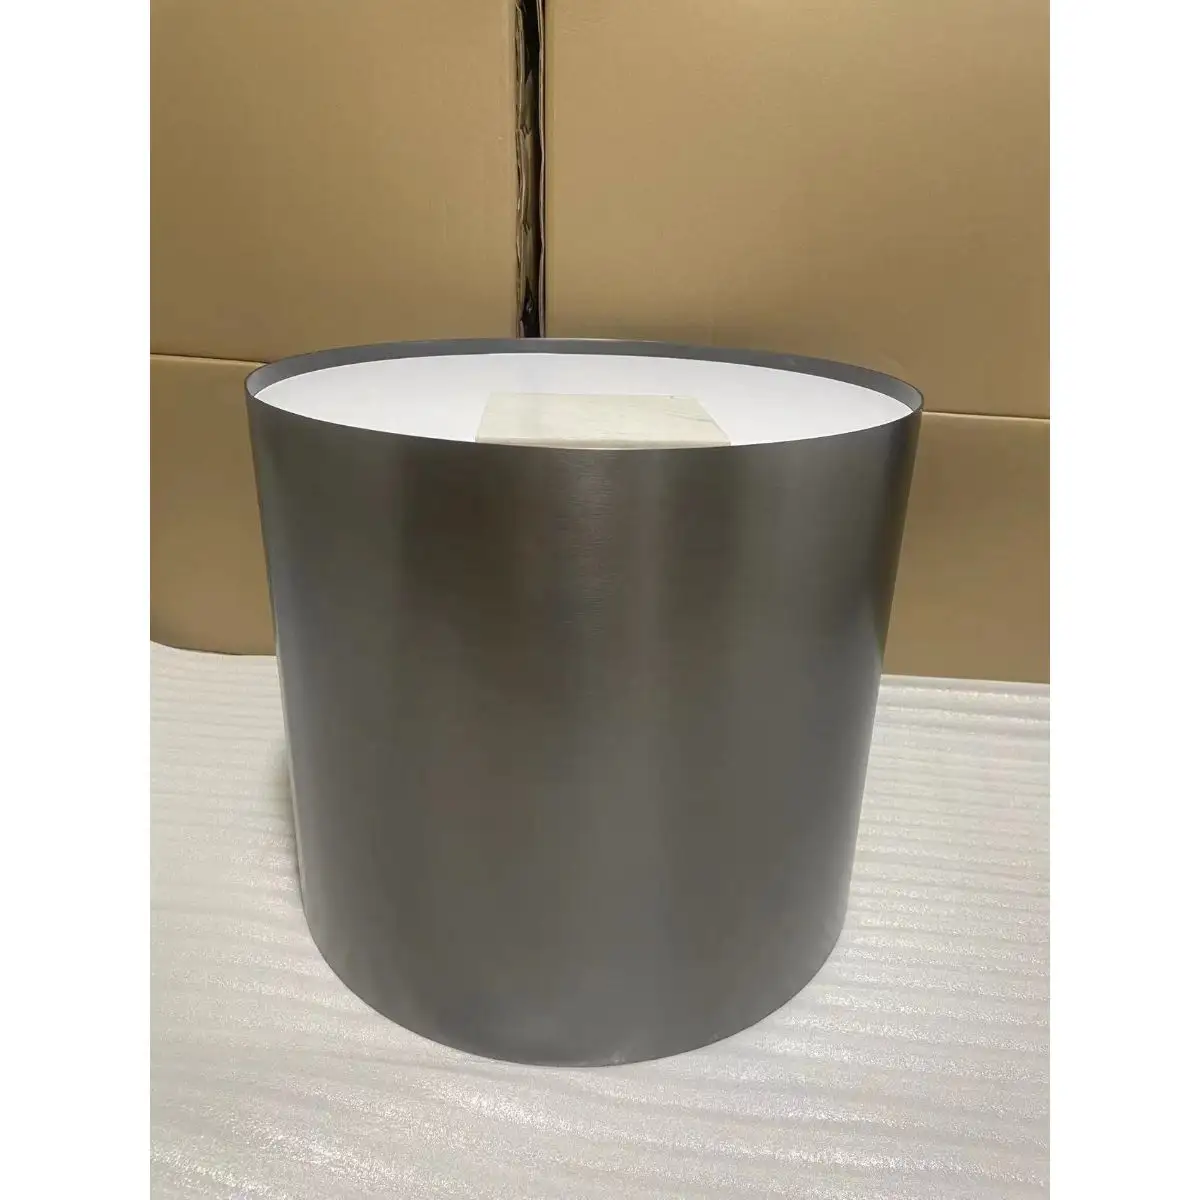 Karois — Table basse en acier inoxydable et marbre, Table de chevet moderne en acier inoxydable avec revêtement titane